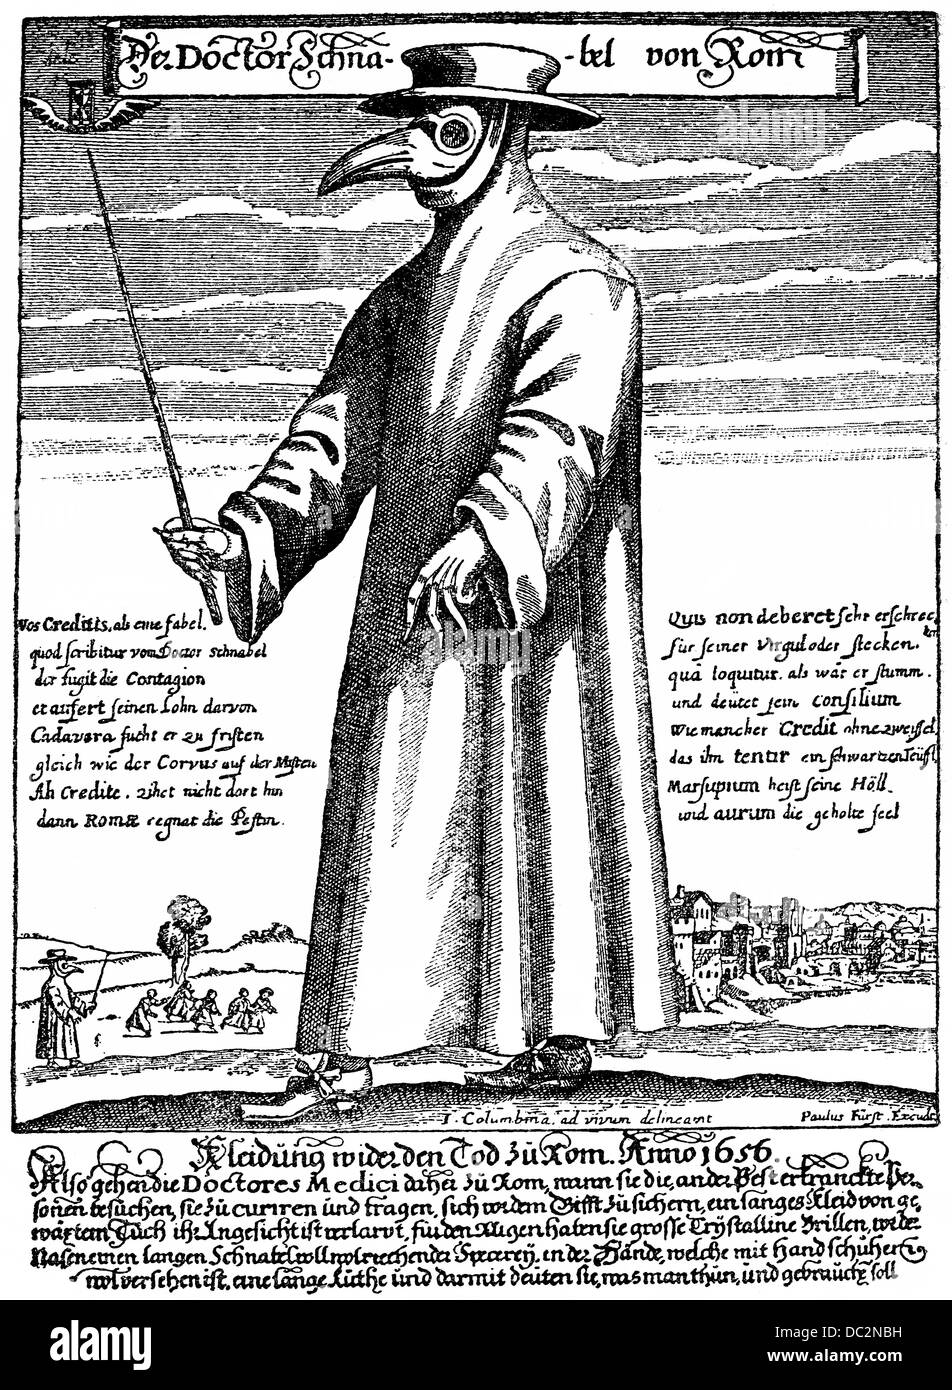 Plague Doctor, Doctor Schnabel von Rom, 1656, Arzt mit einem Schnabel-Maske mit Kräutern und trägt einen Stock für die Kranken fernzuhalten Stockfoto